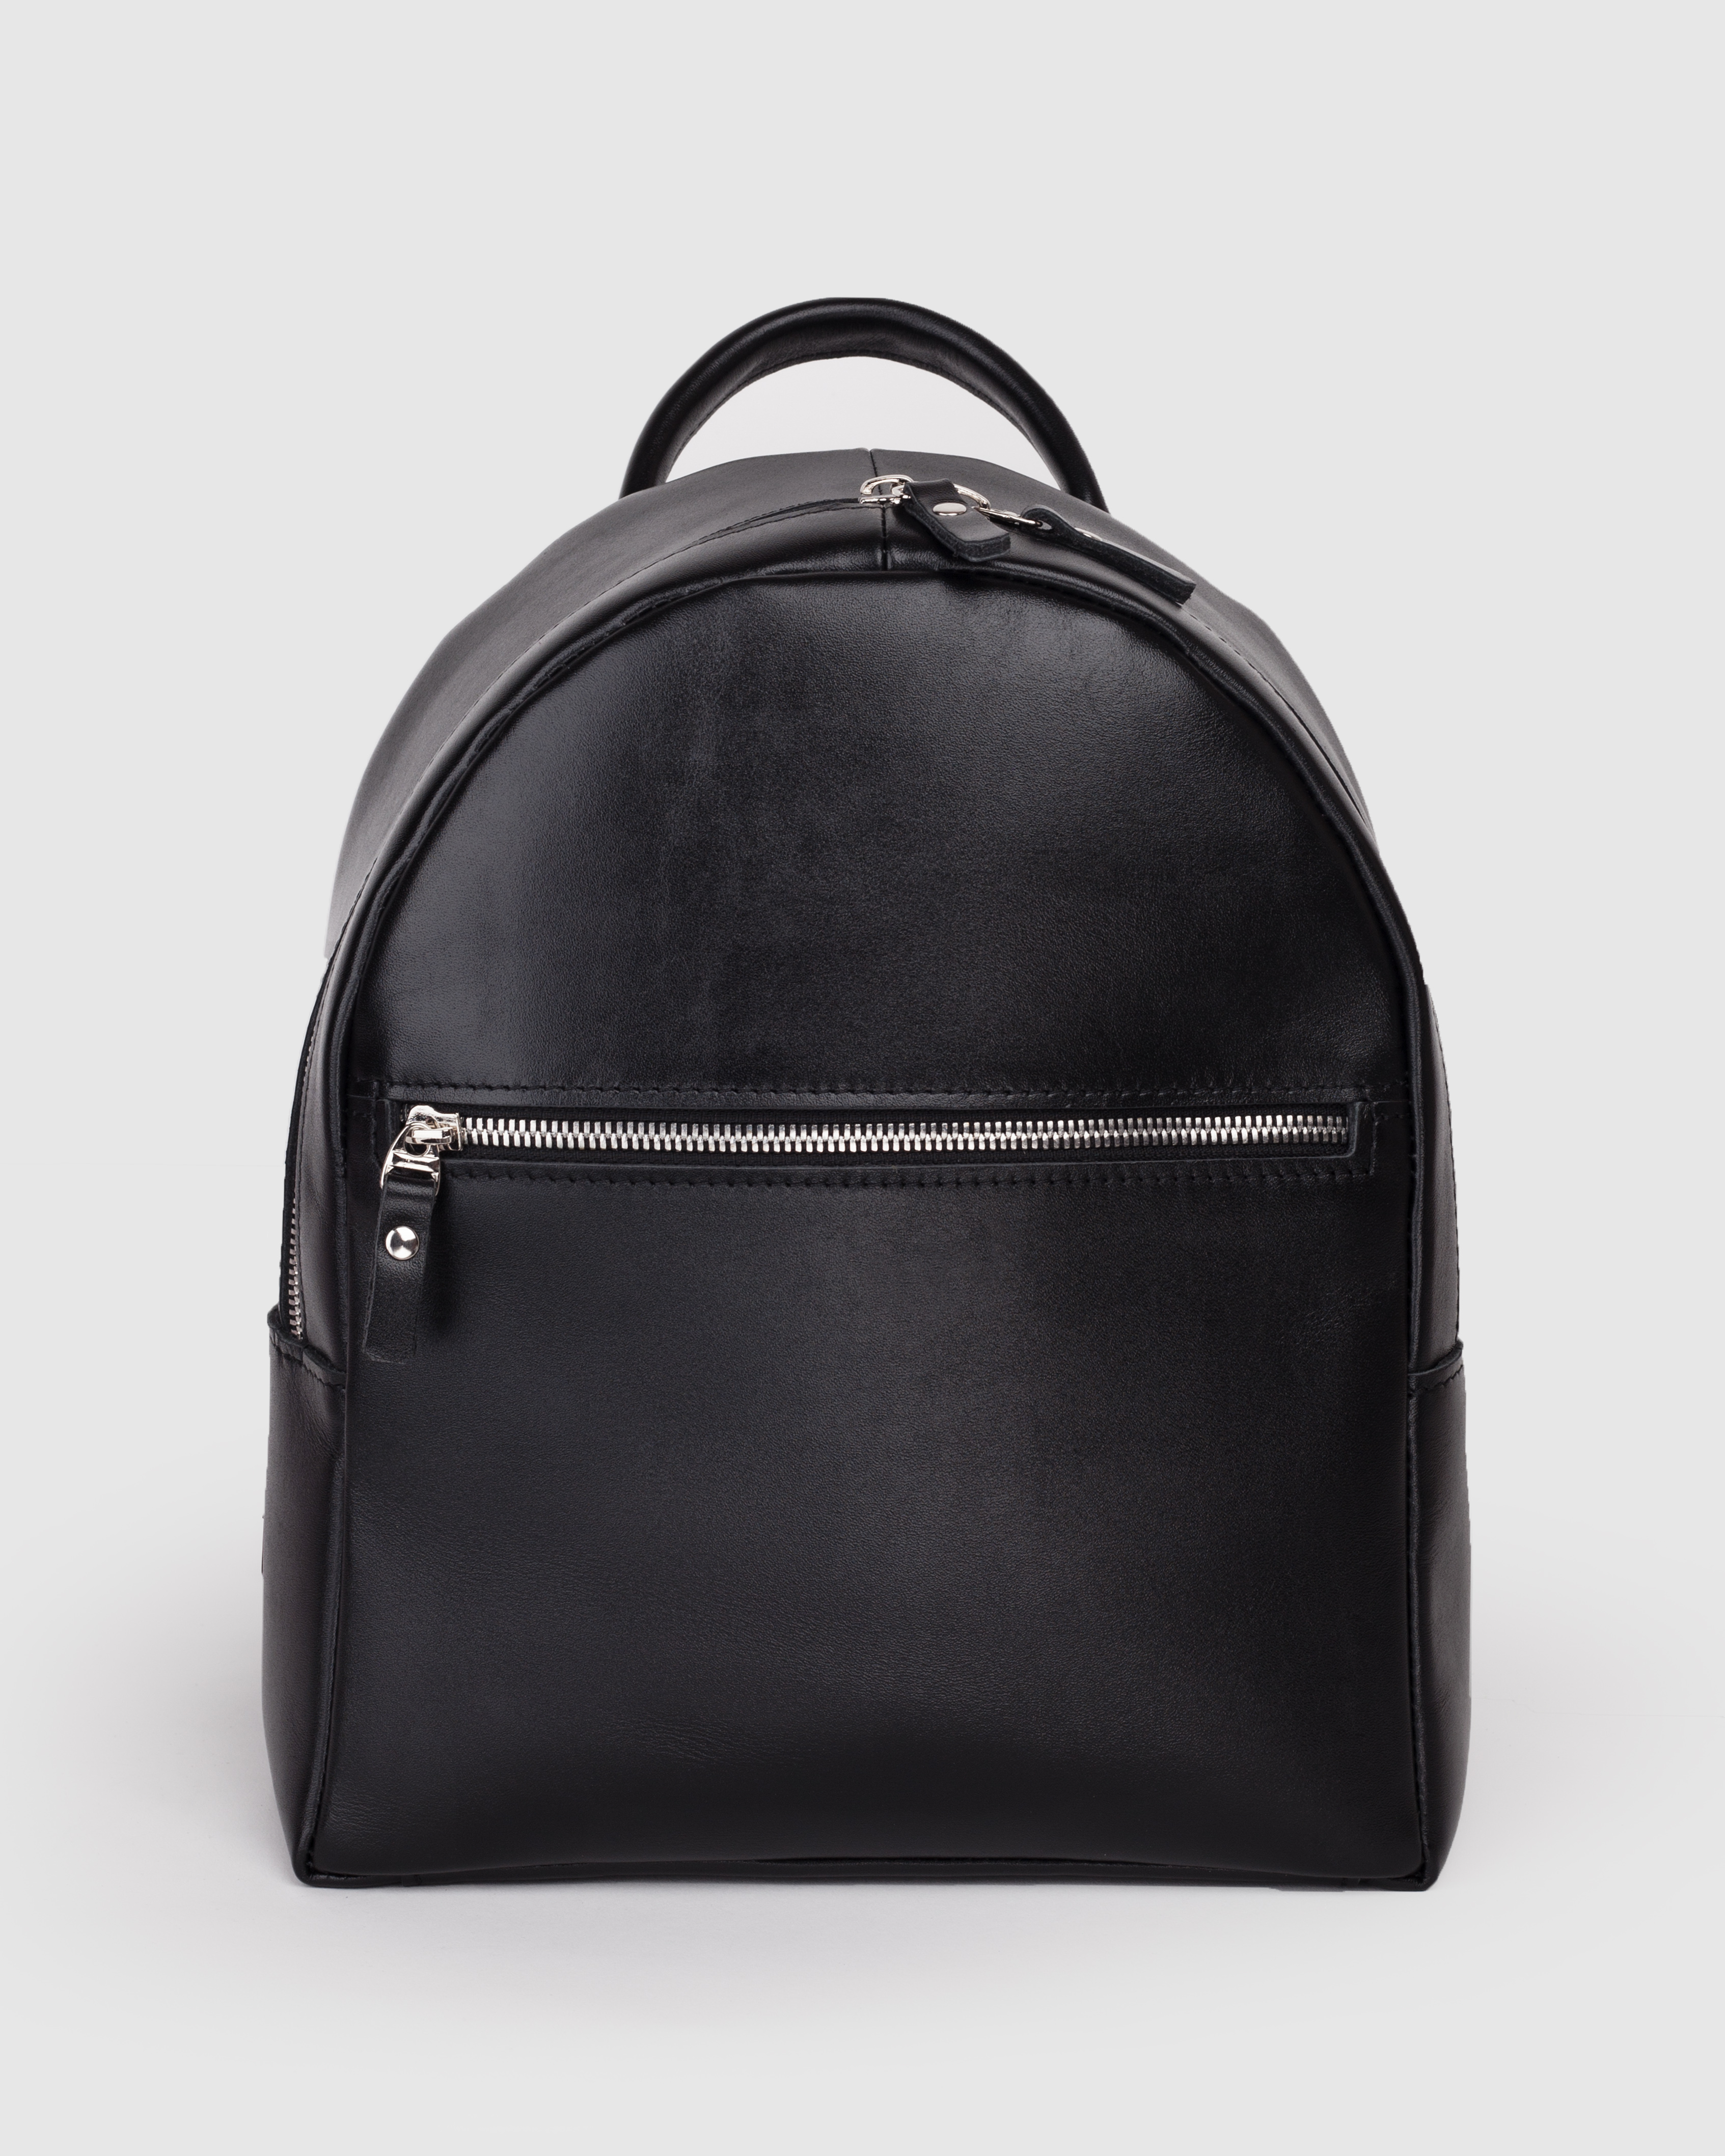 Женский кожаный рюкзак на молнии черный B0081